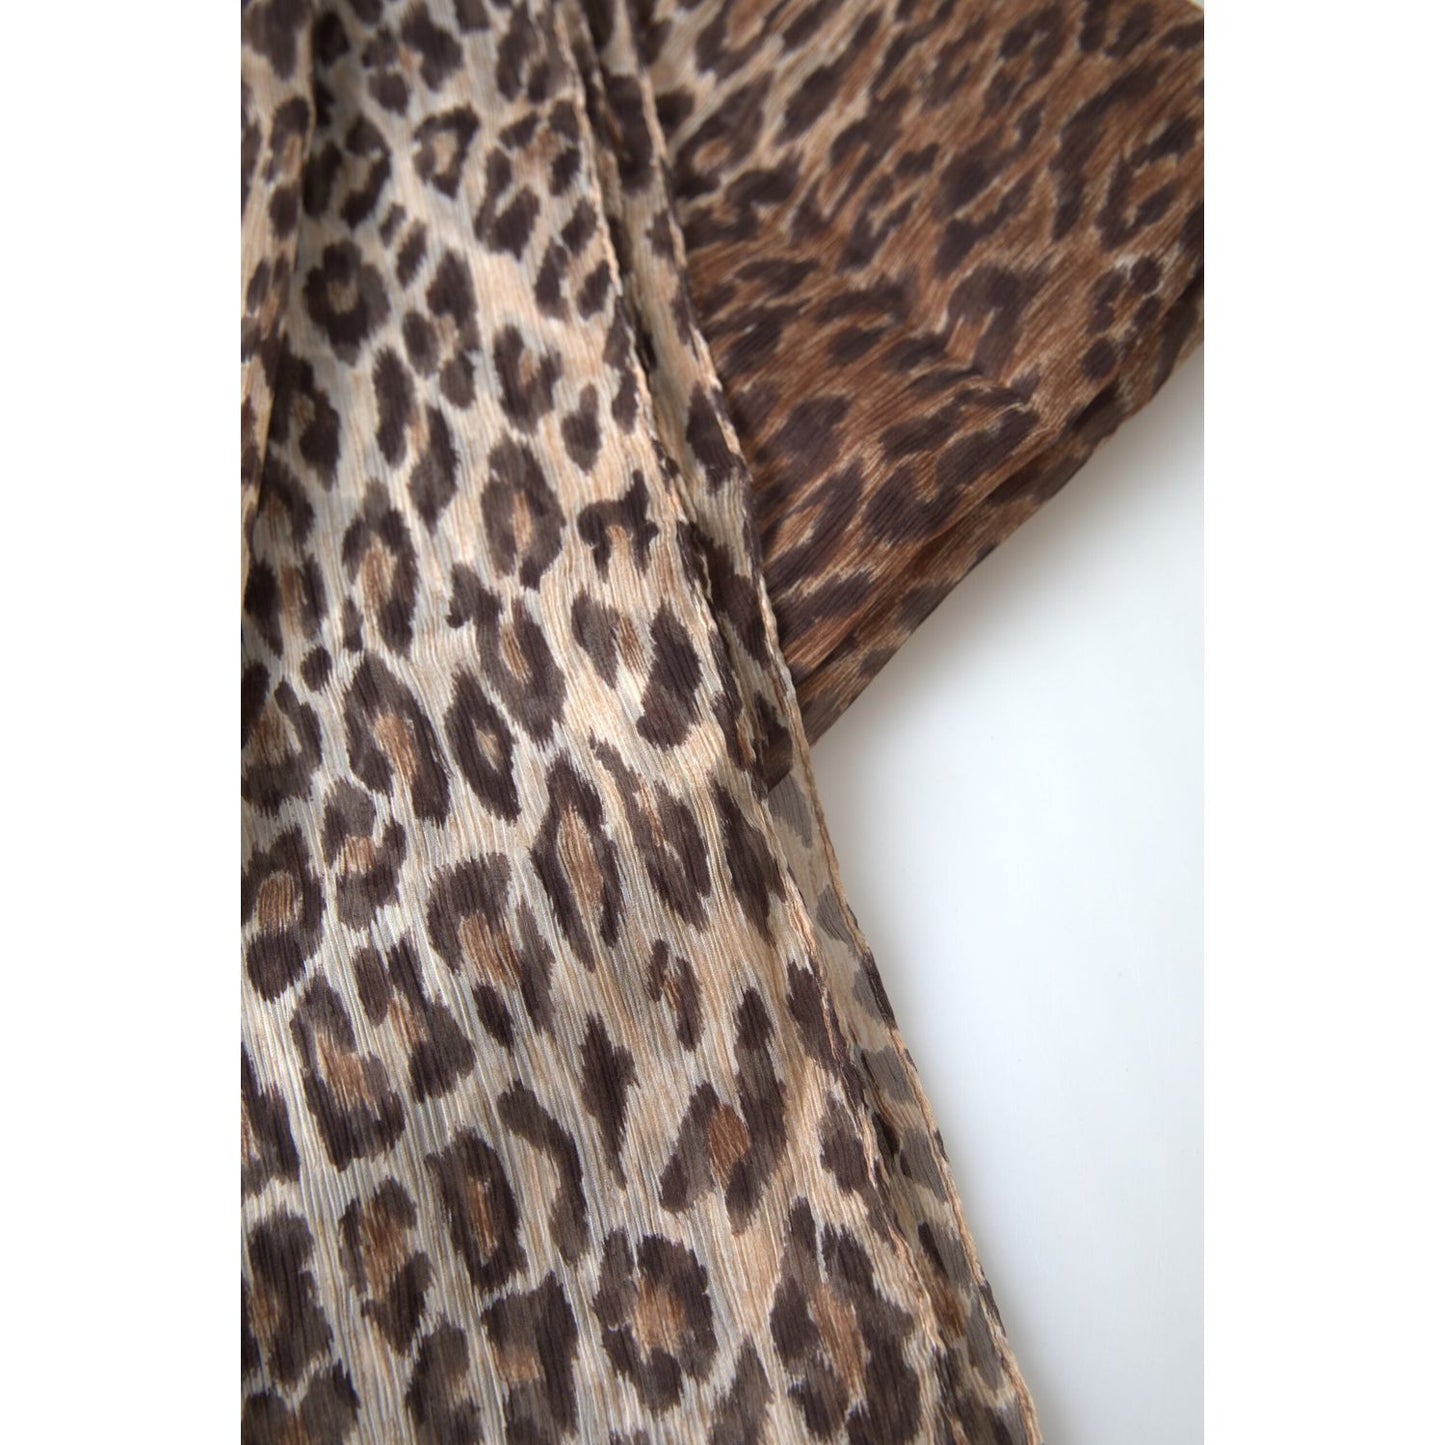 Dolce & Gabbana Elegant Silk Neck Wrap Scarf in Luxurious Brown brown-leopard-silk-shawl-wrap-foulard-scarf 465A4059-scaled-5f5da804-10c.jpg